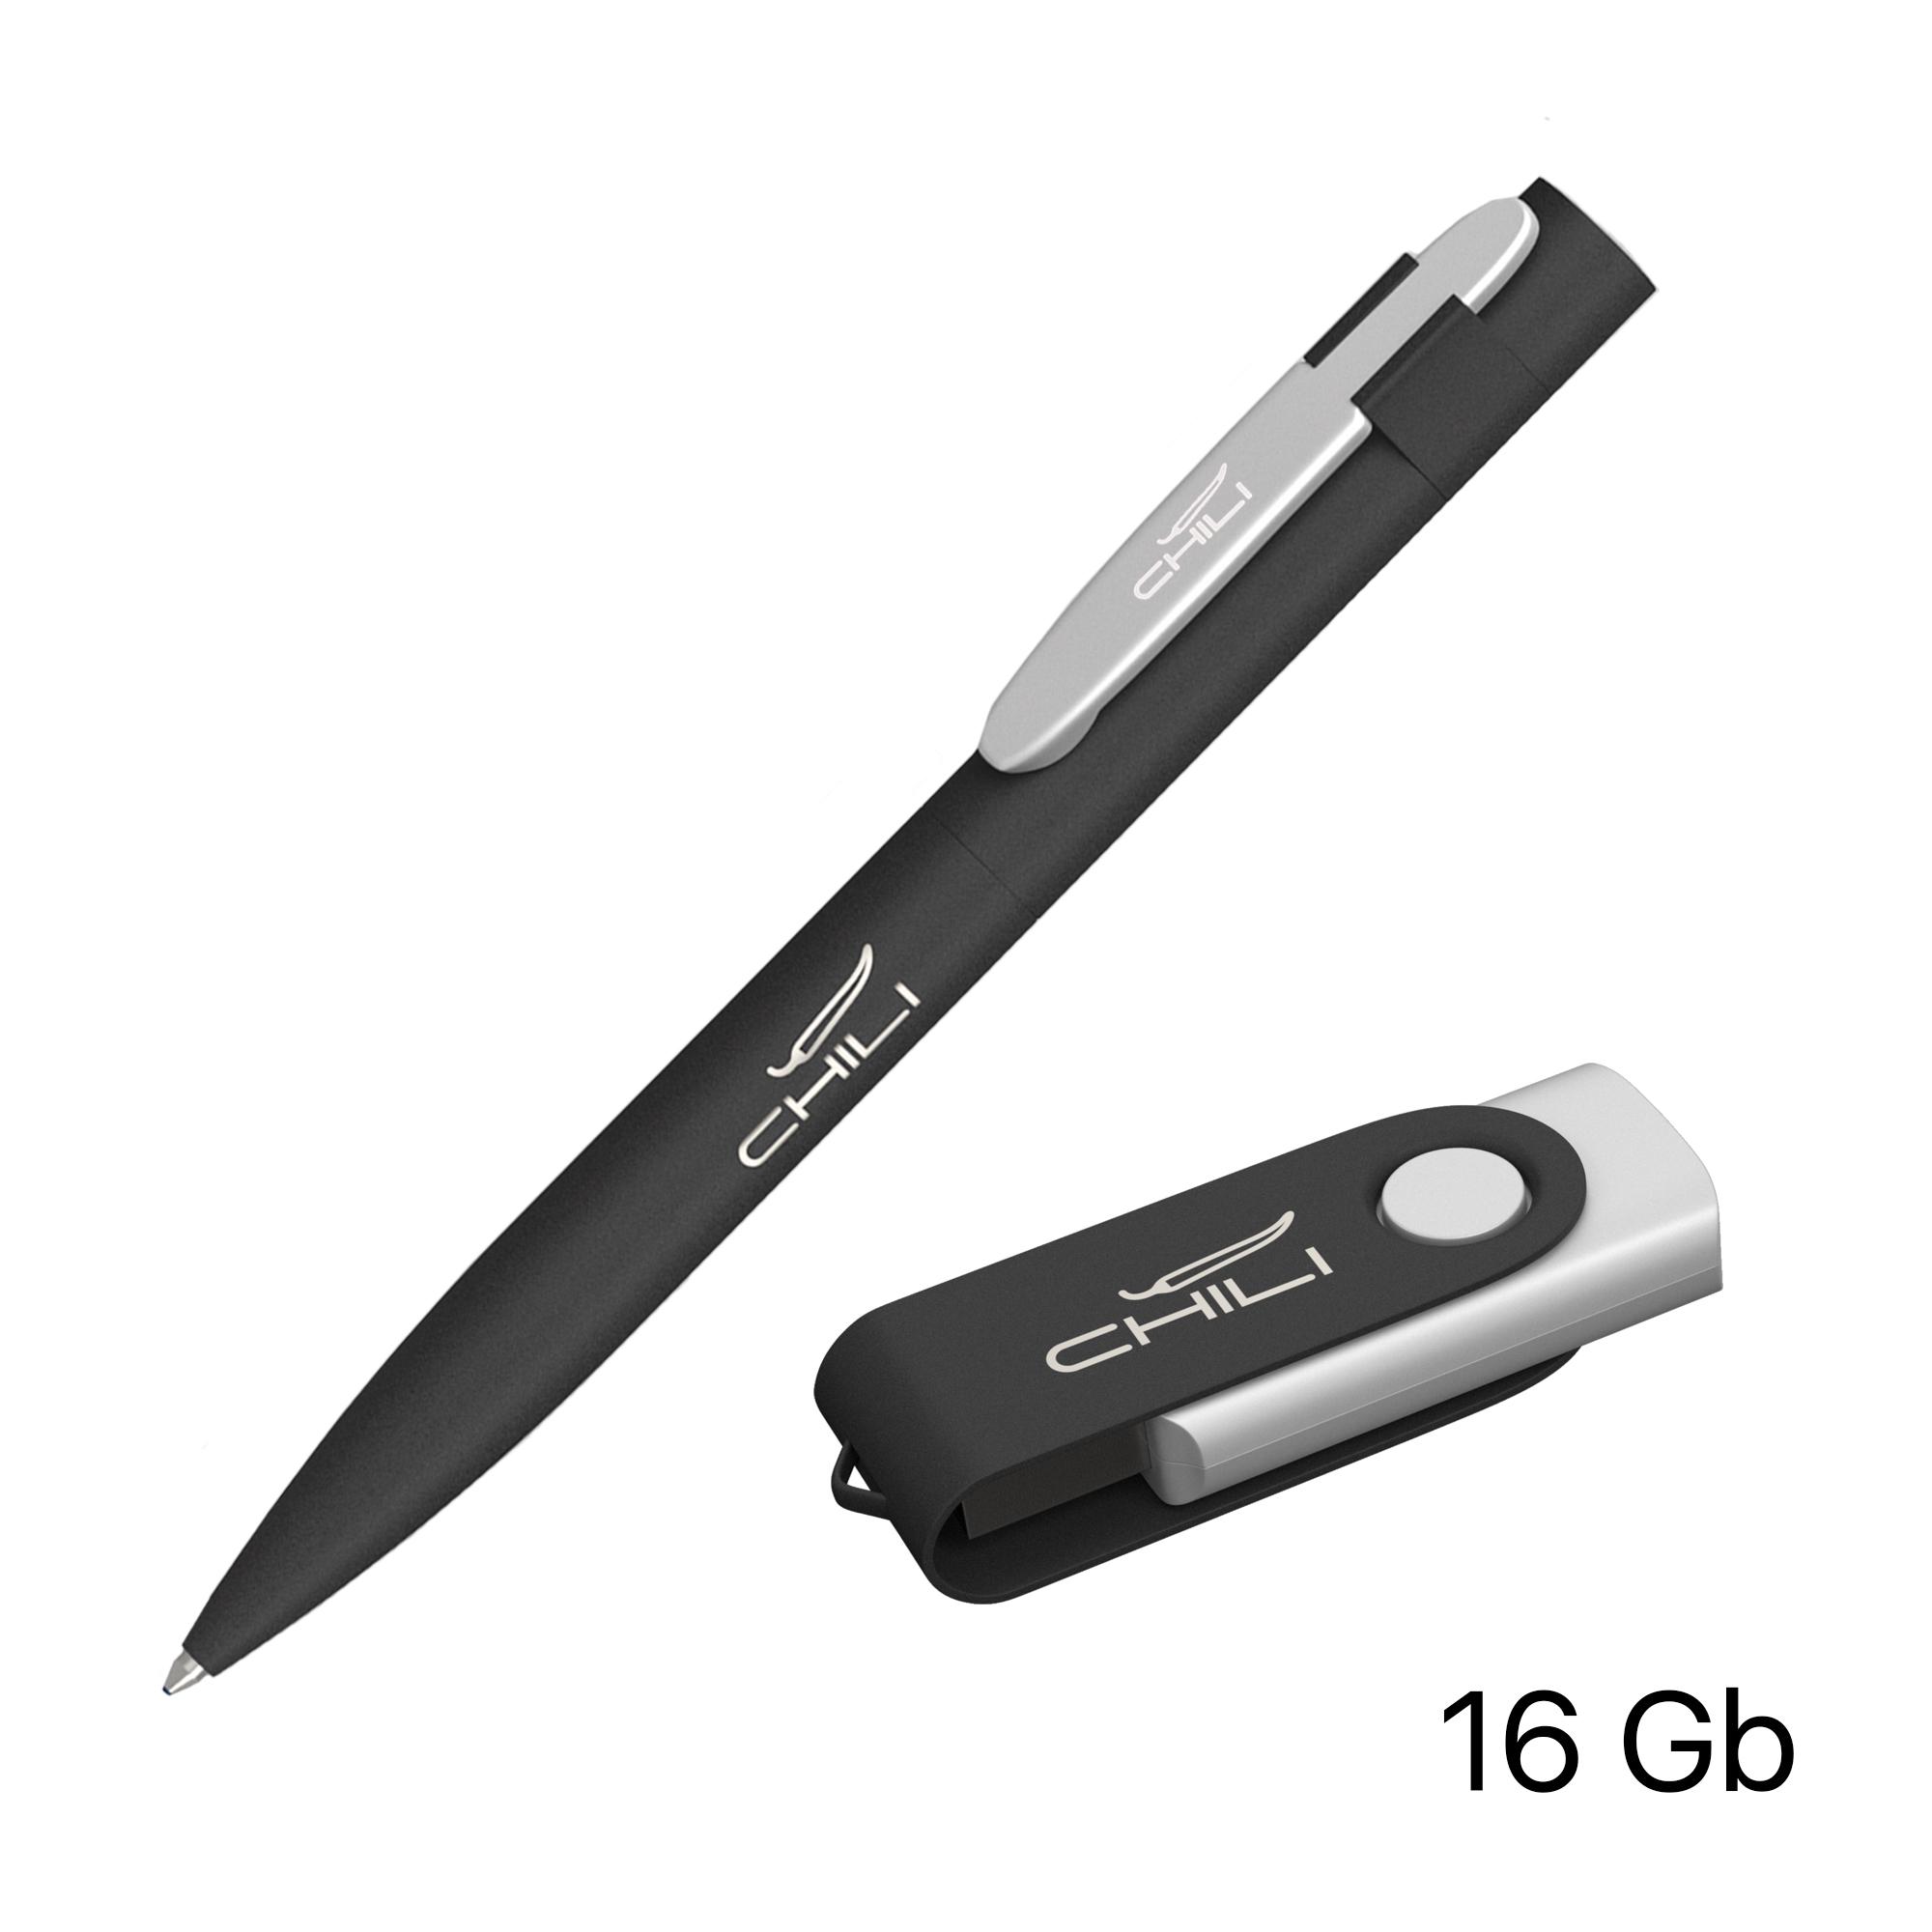 Набор ручка + флеш-карта 16 Гб в футляре, покрытие softgrip, цвет черный с серебристым, фото 1